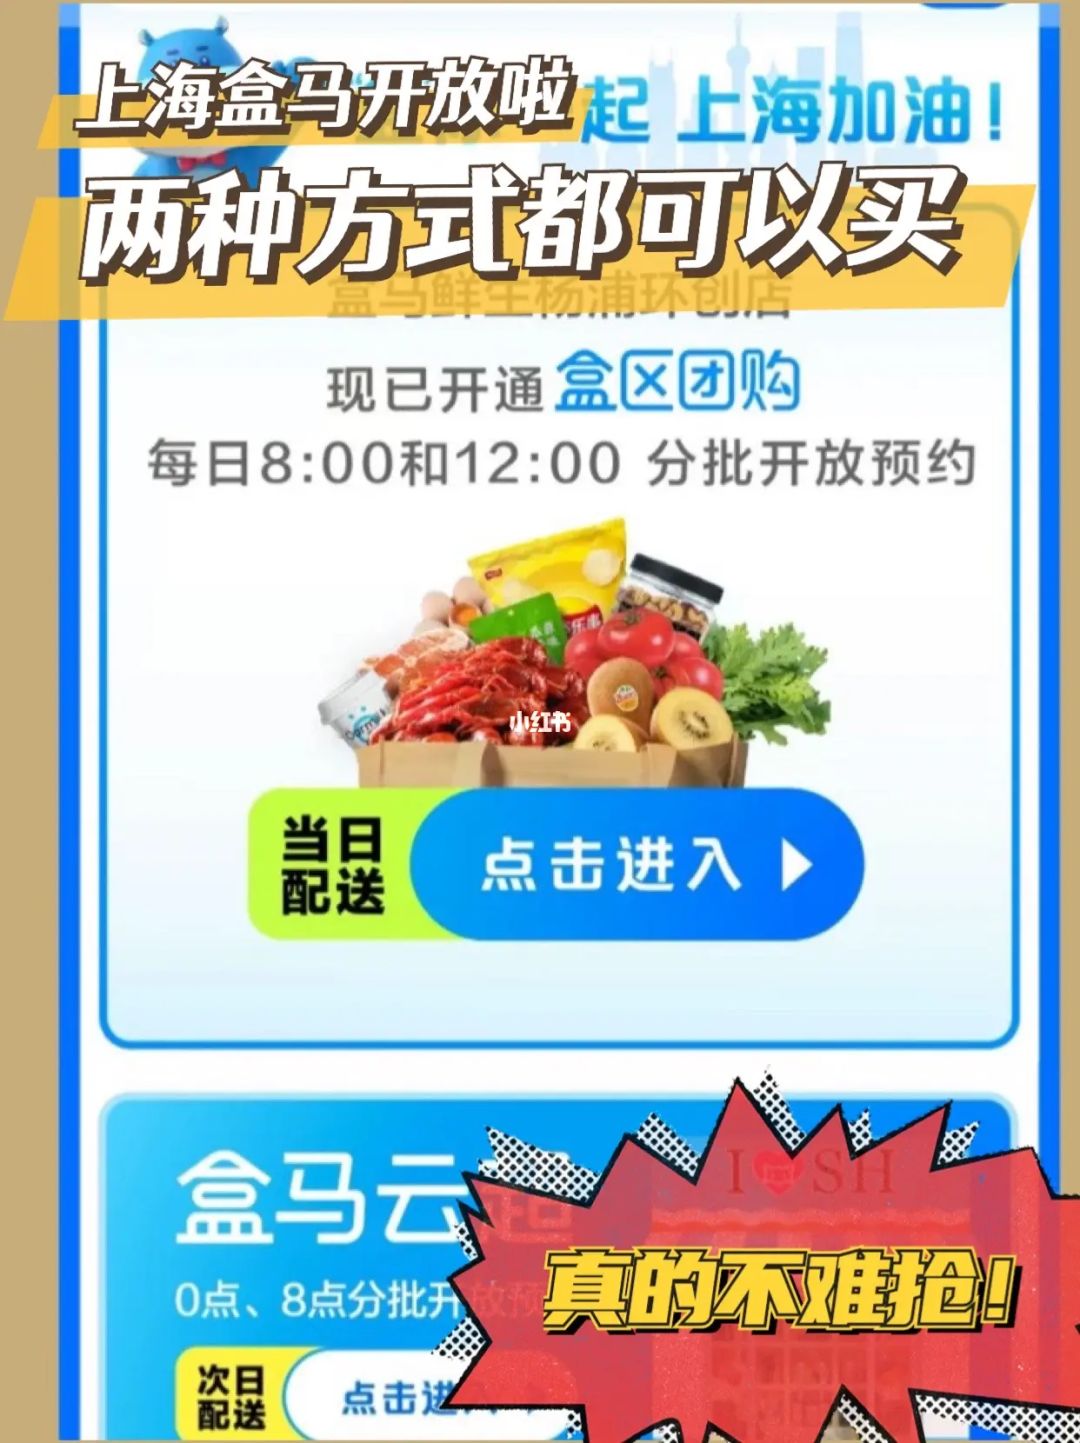 广州买菜app_深圳买菜app那个好_买菜app